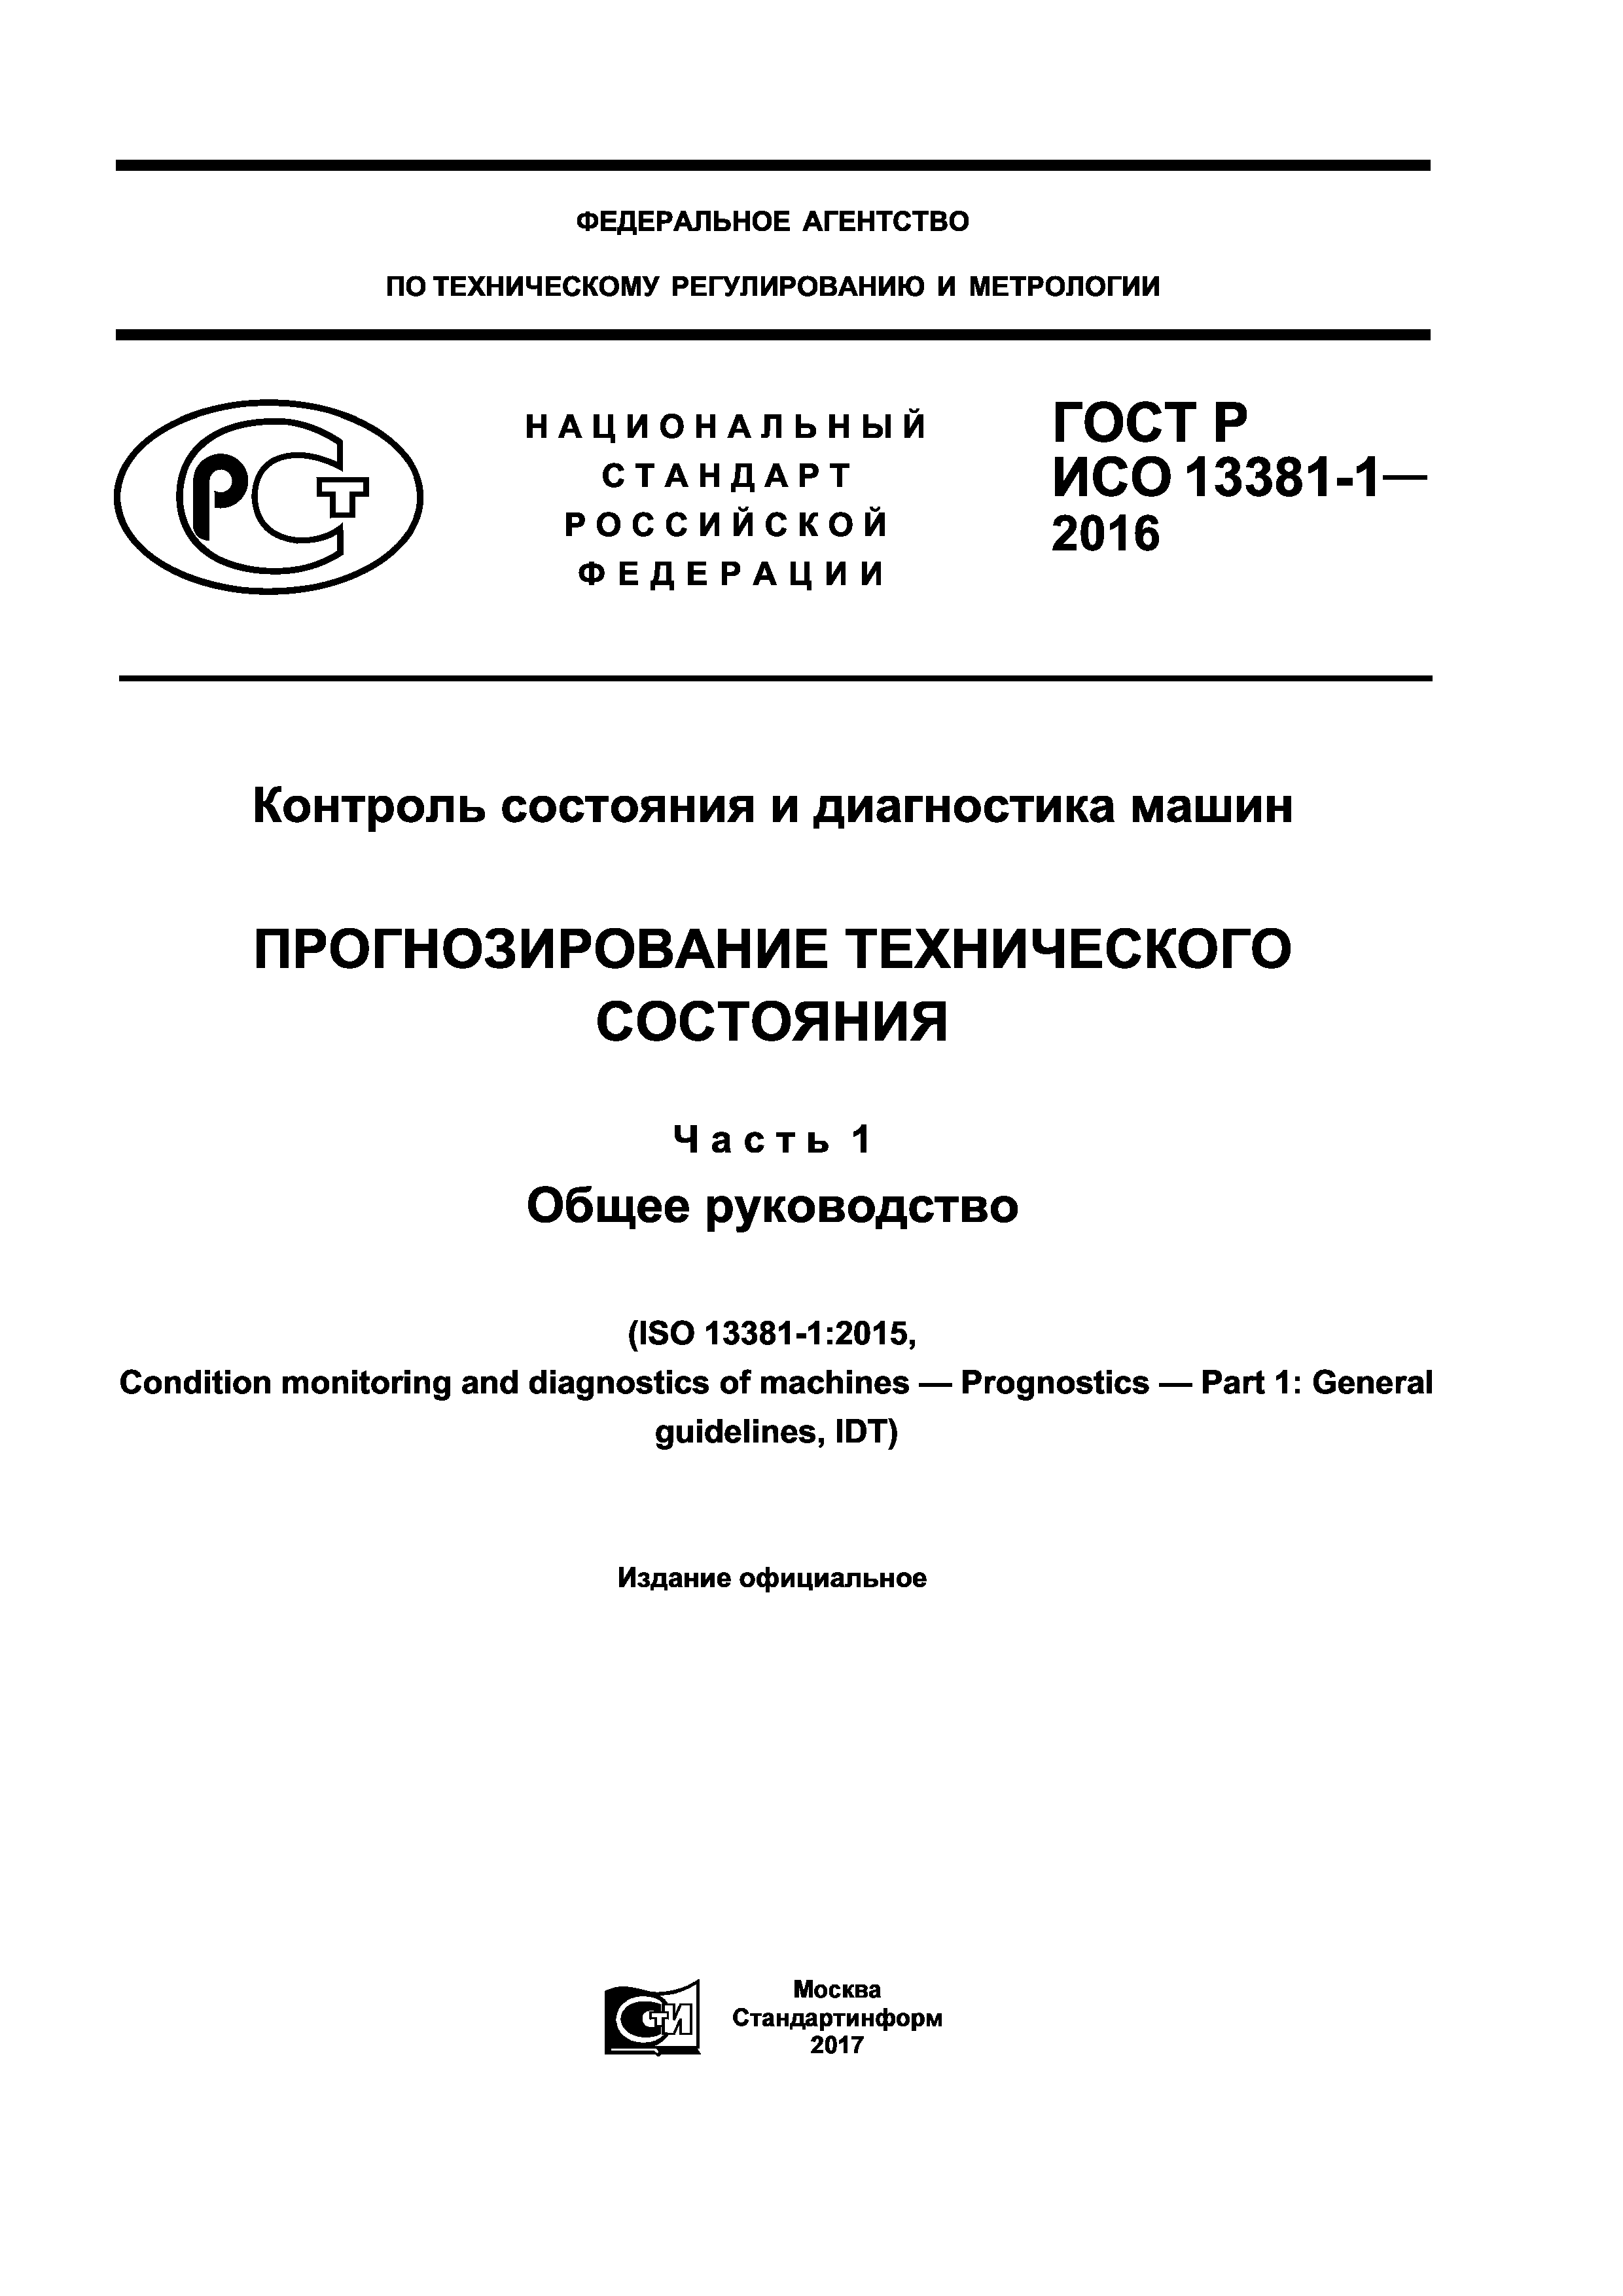 ГОСТ Р ИСО 13381-1-2016